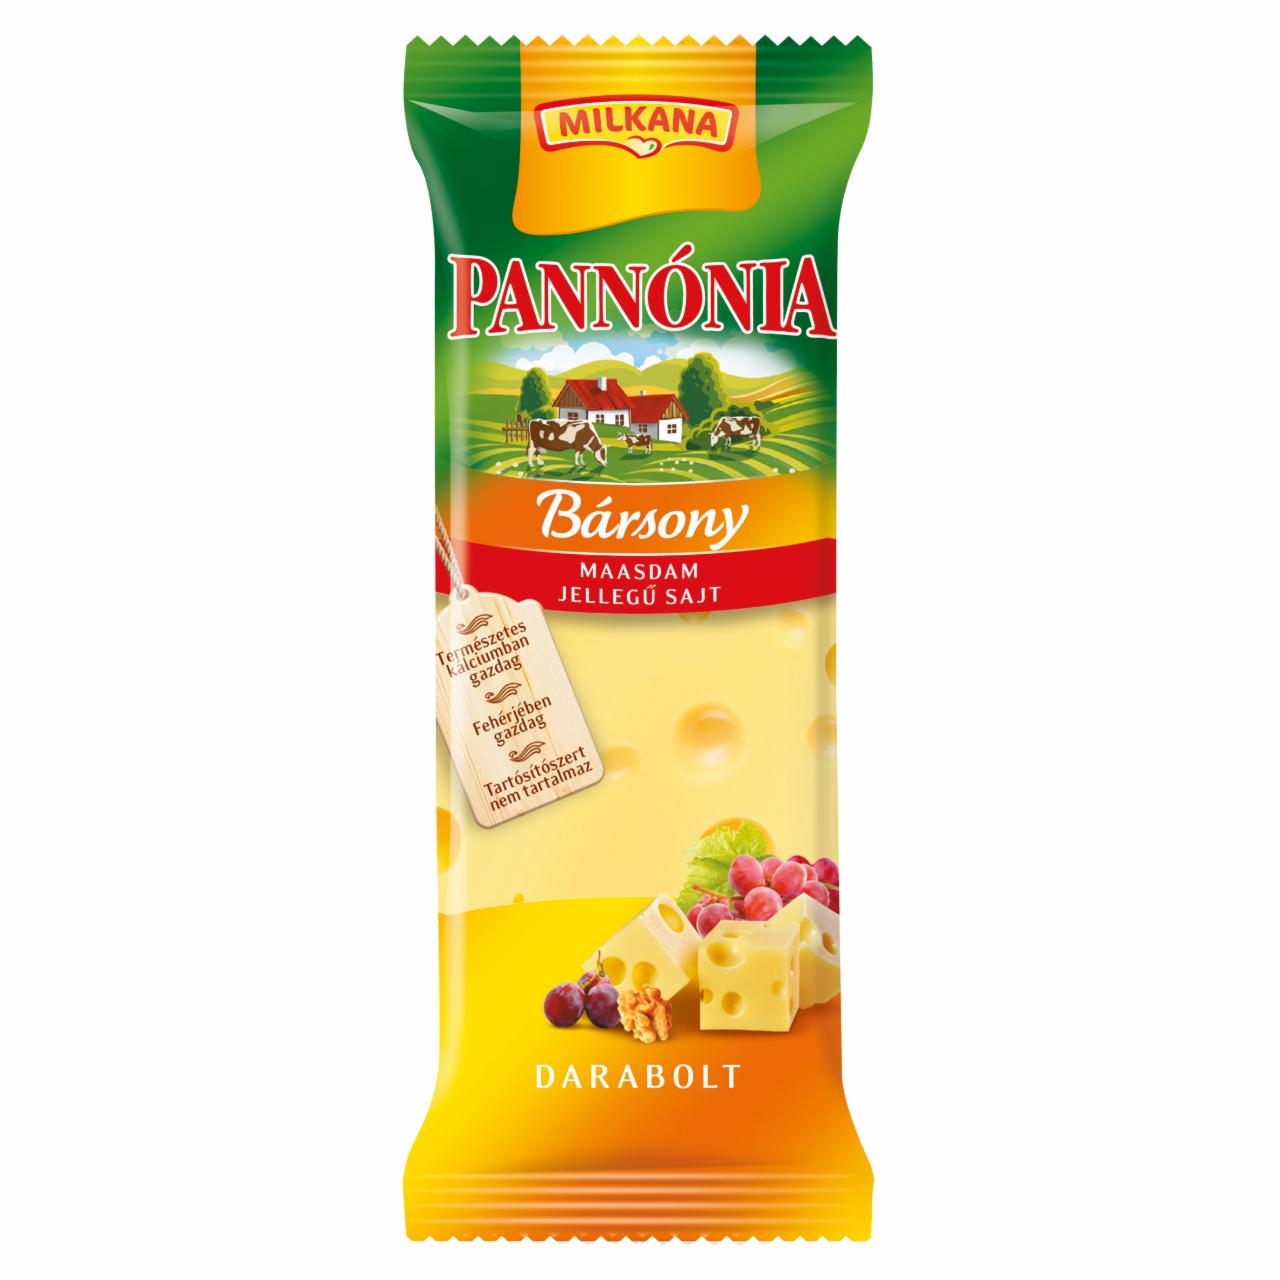 Képek - Pannónia Bársony darabolt sajt 200 g